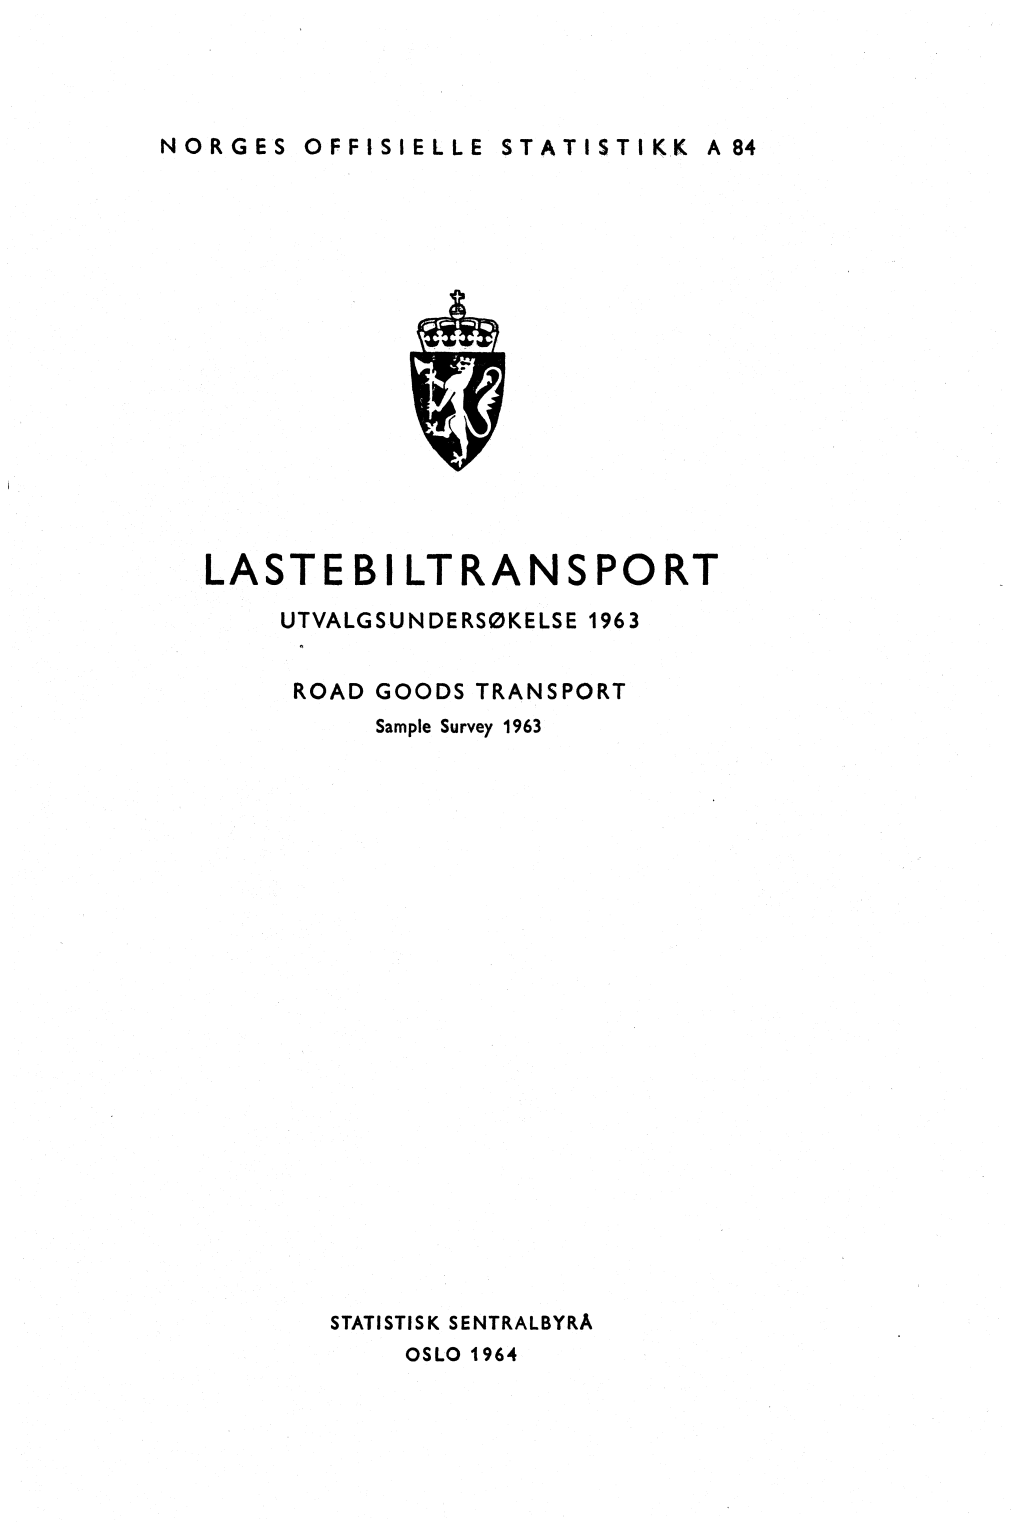 Lastebiltransport. Utvalgsundersøkelse 1963